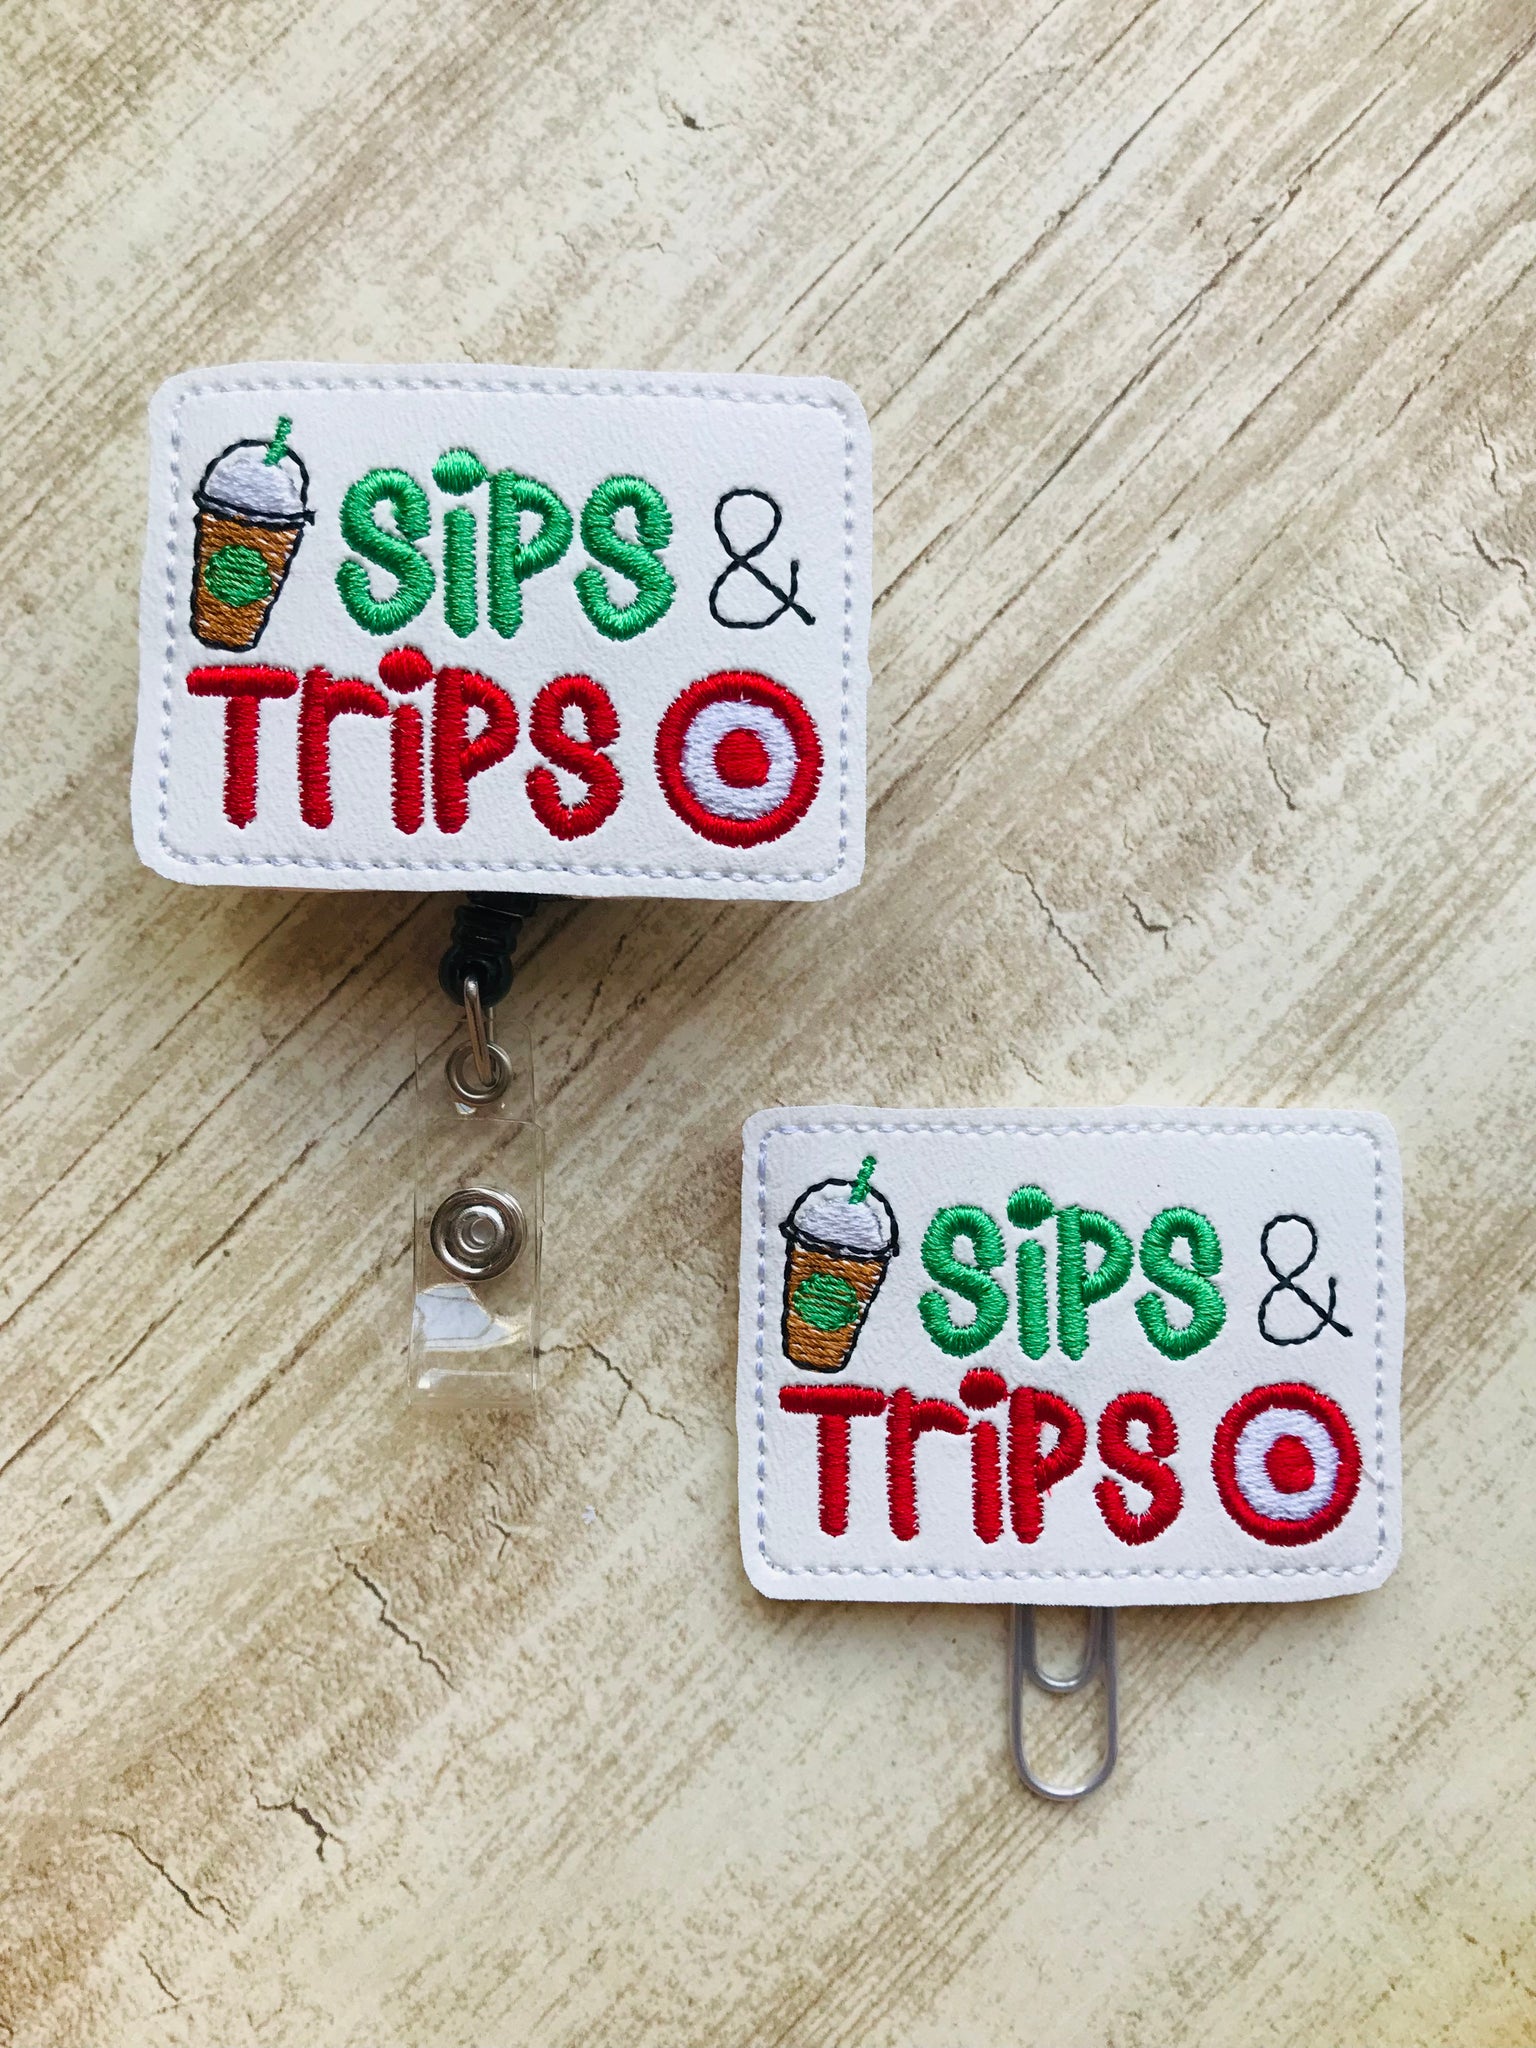 Sips & Trips